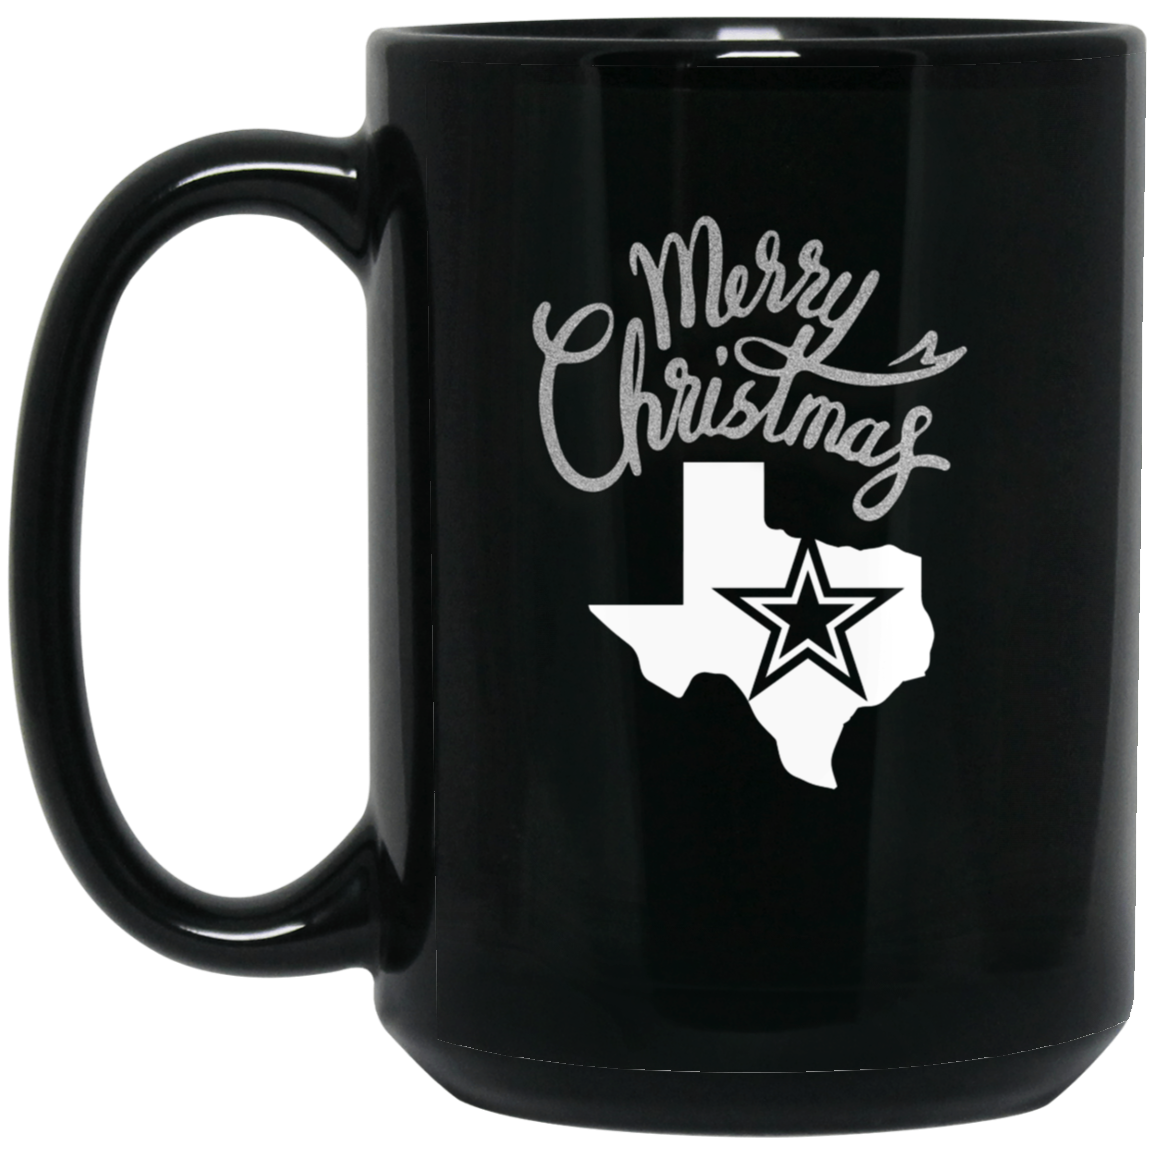 Merry Christmas Dallas Texas Cowboys 15oz Black Mug